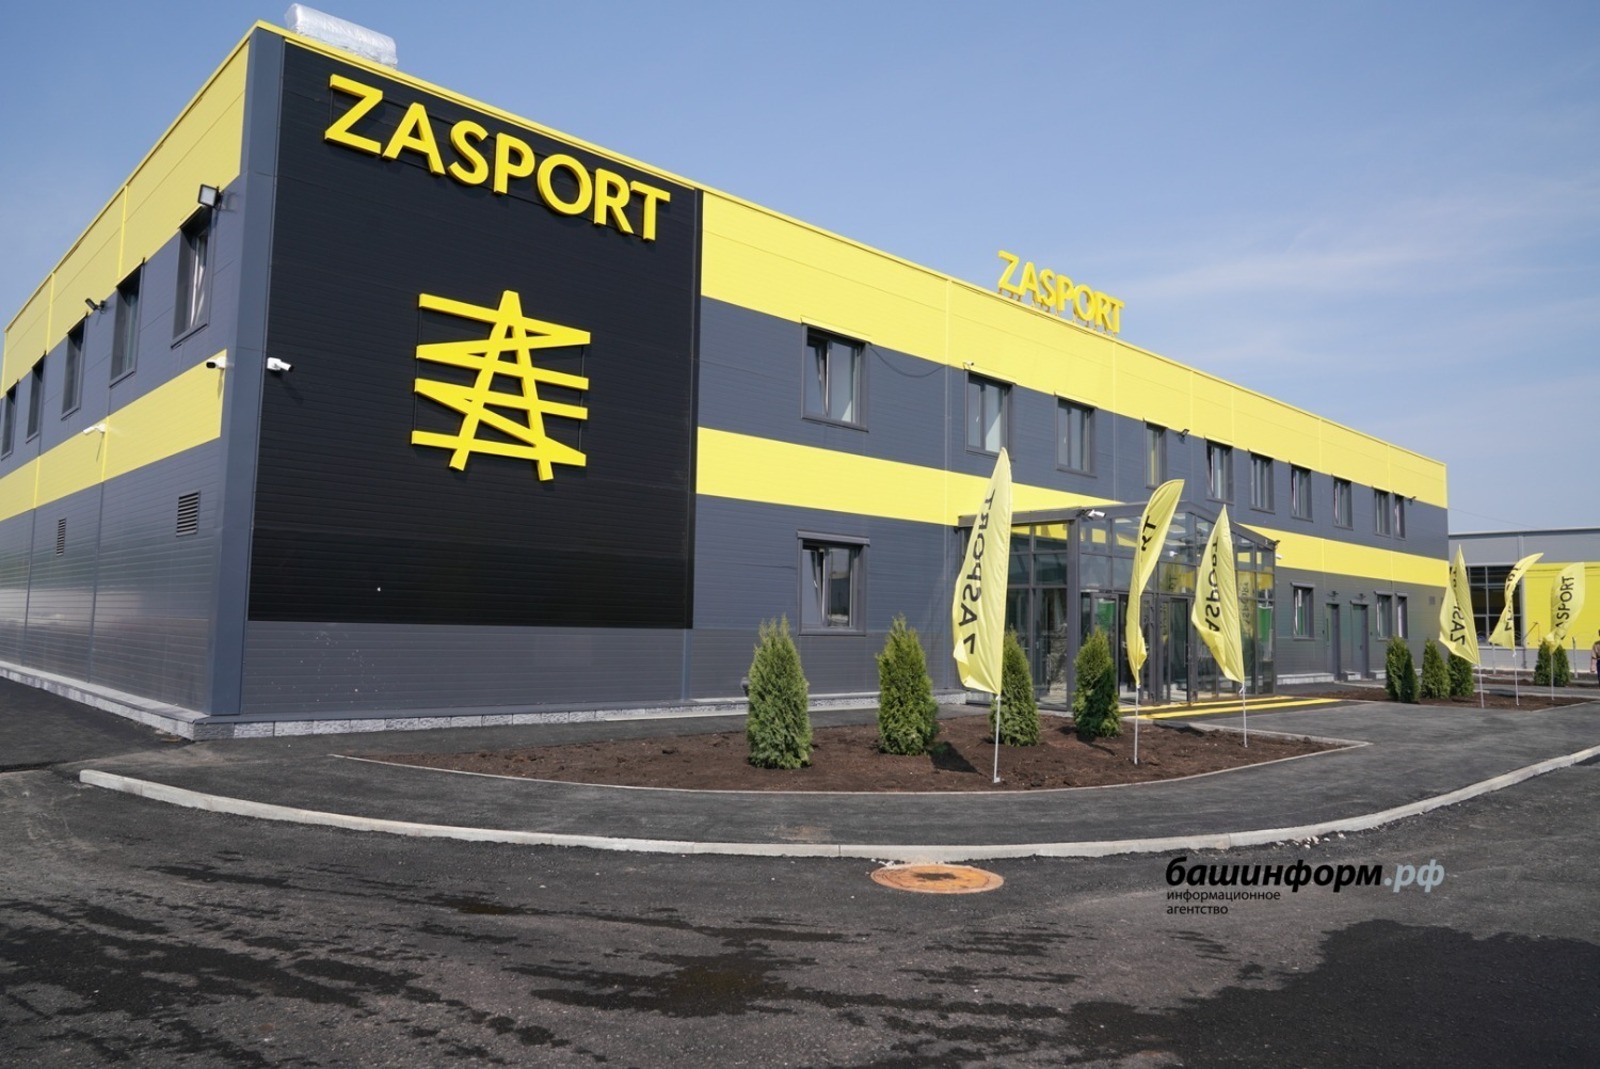 В Башкирии открылось новое предприятие ZASPORT